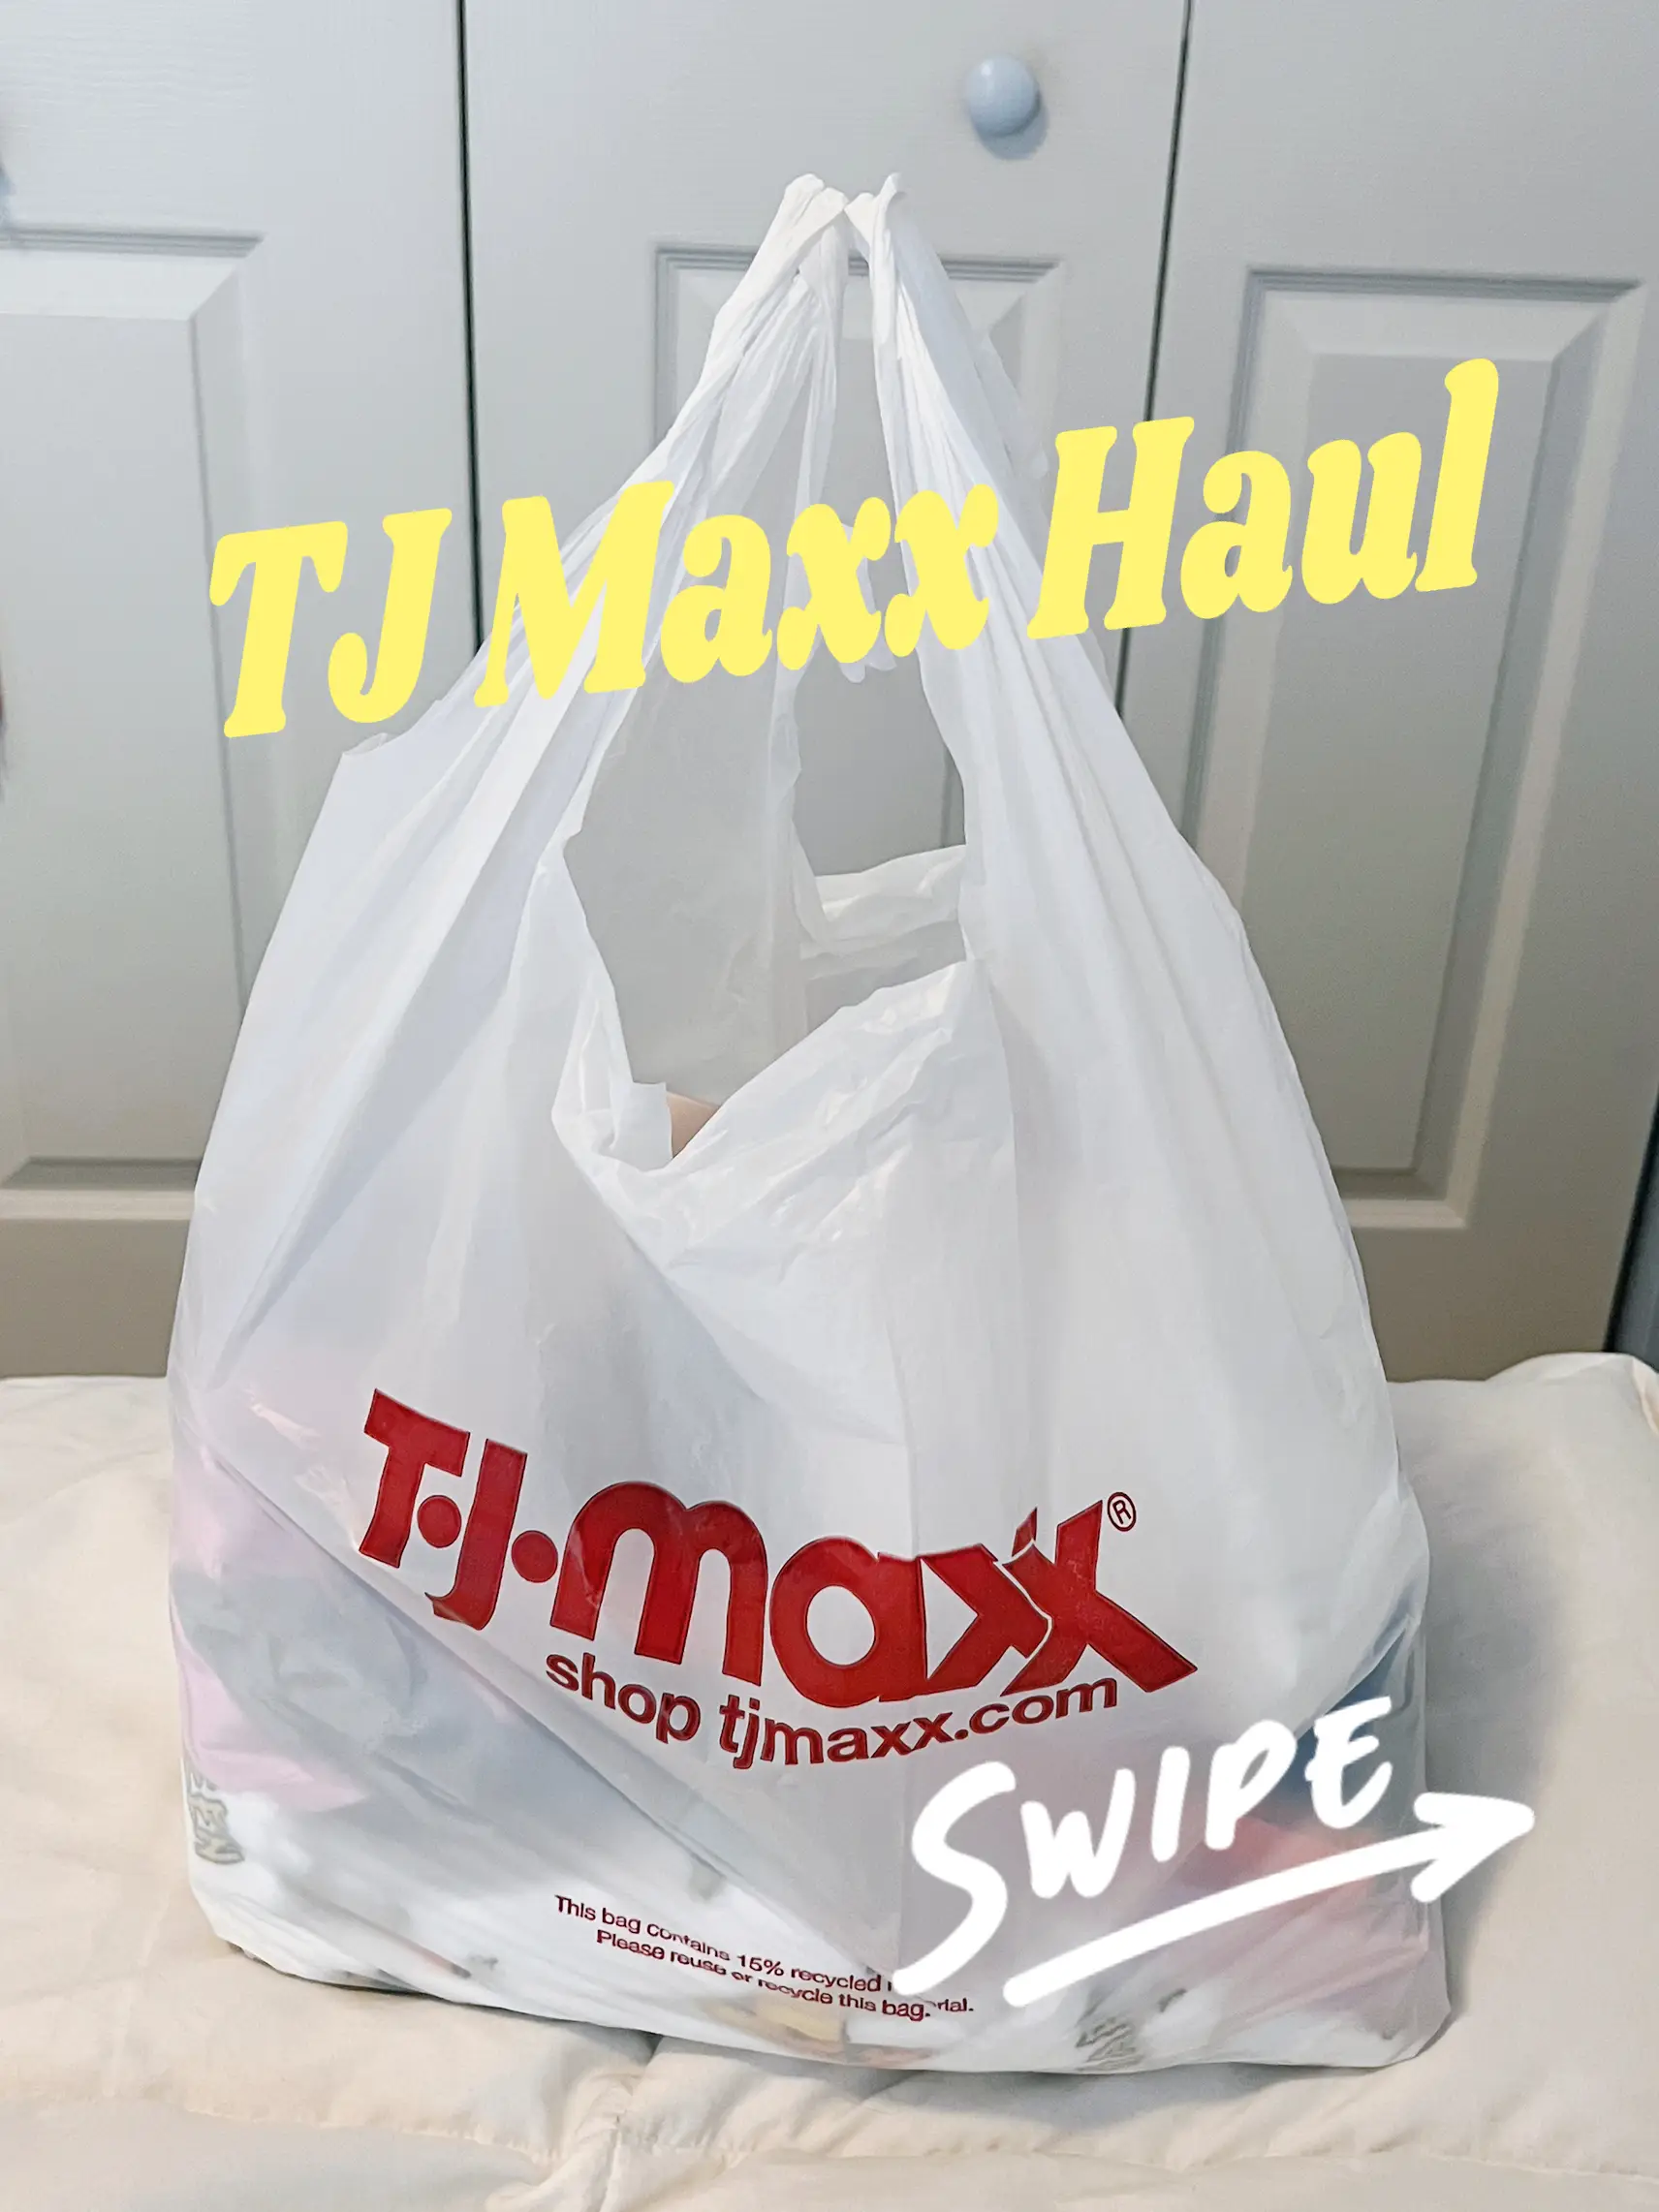 TJ Maxx clearance Event on toys and summer accessories. #tjmaxx #tjmax